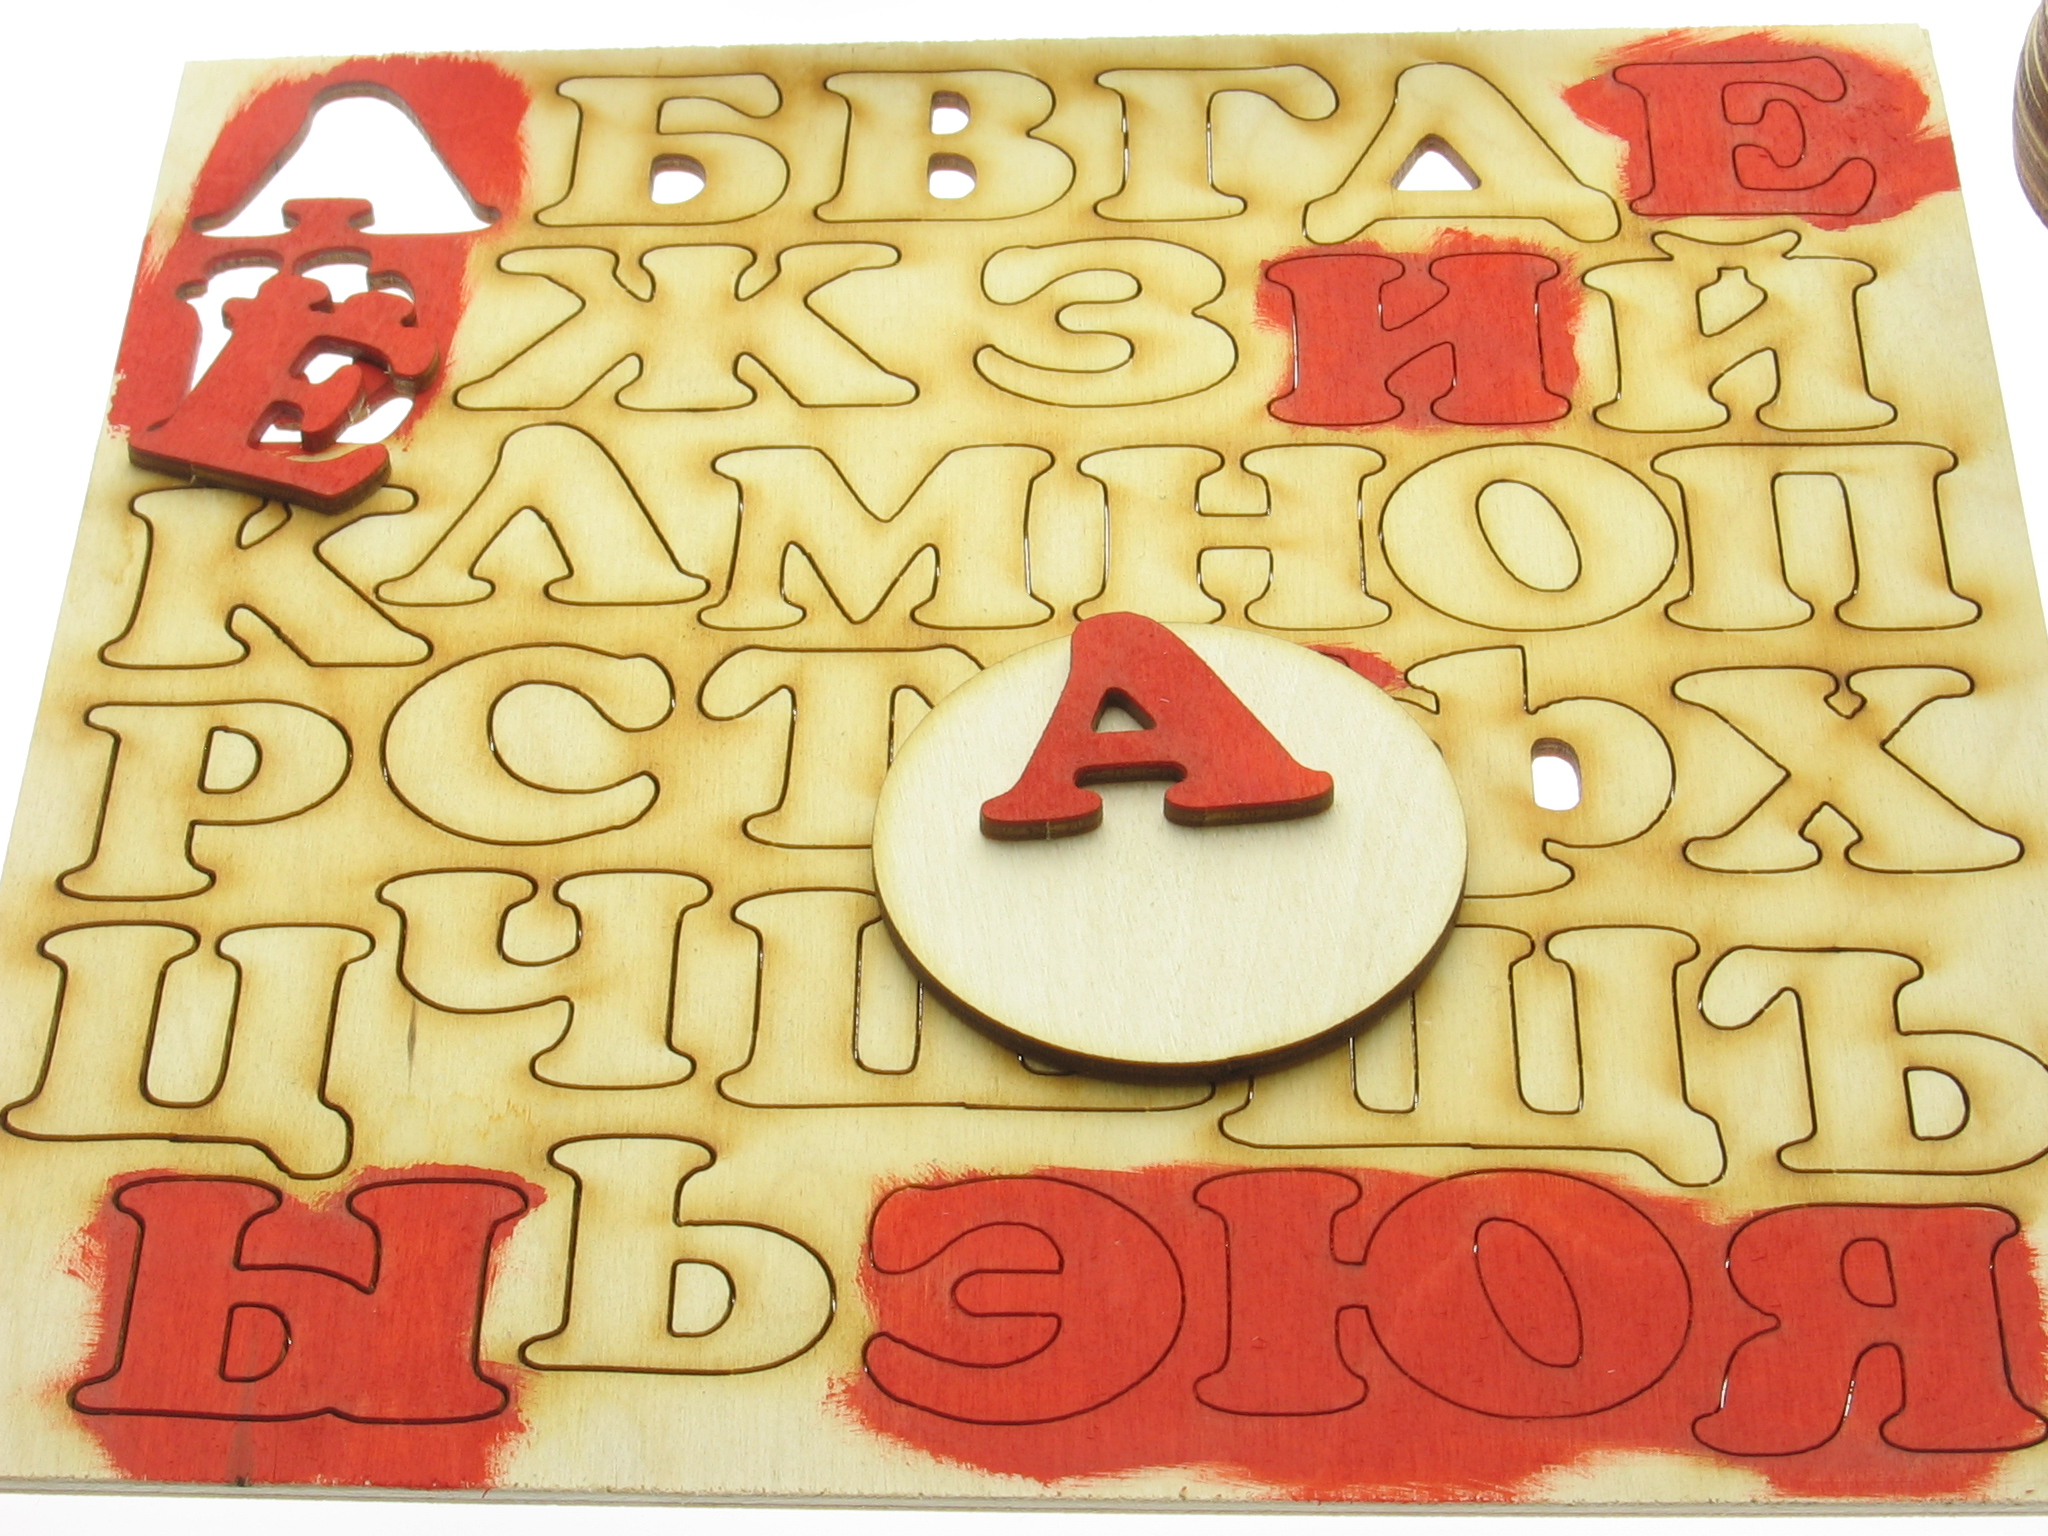 Делаем своими руками деревянную азбуку на магнитах от компании Шоп Чилдрен Той". Методический материал для обучения детей чтению. Деревянная азбука раскраска.